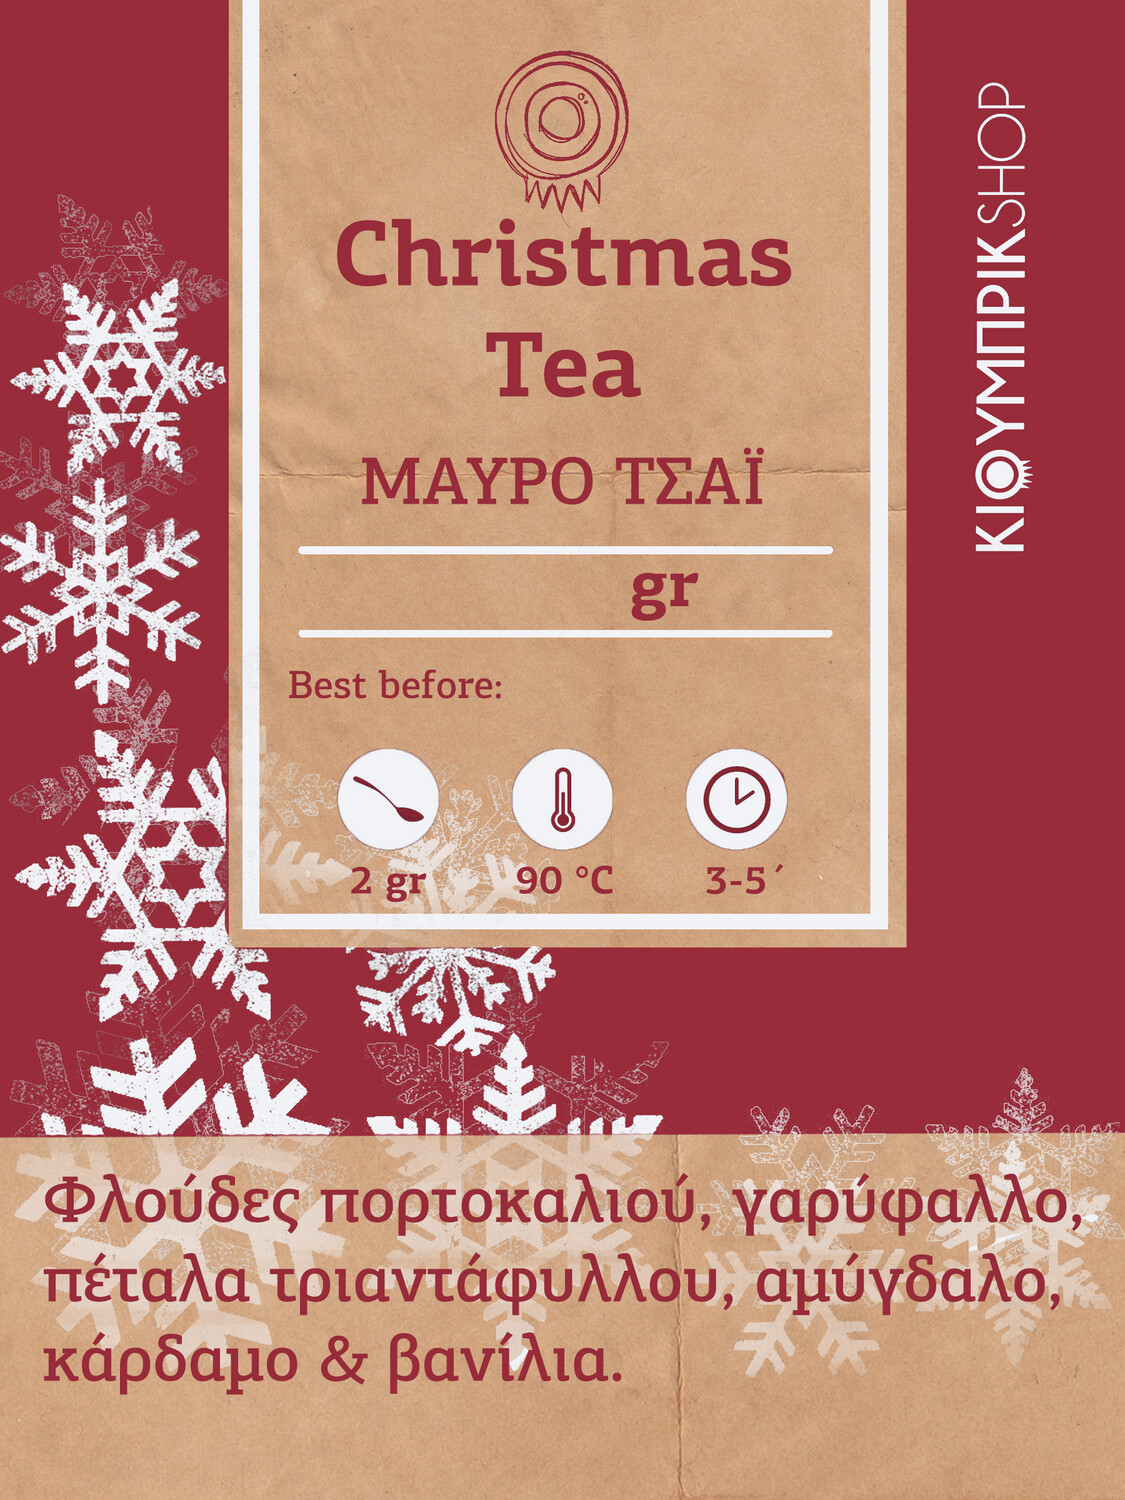 Μαύρο Τσάι | Christmas Tea